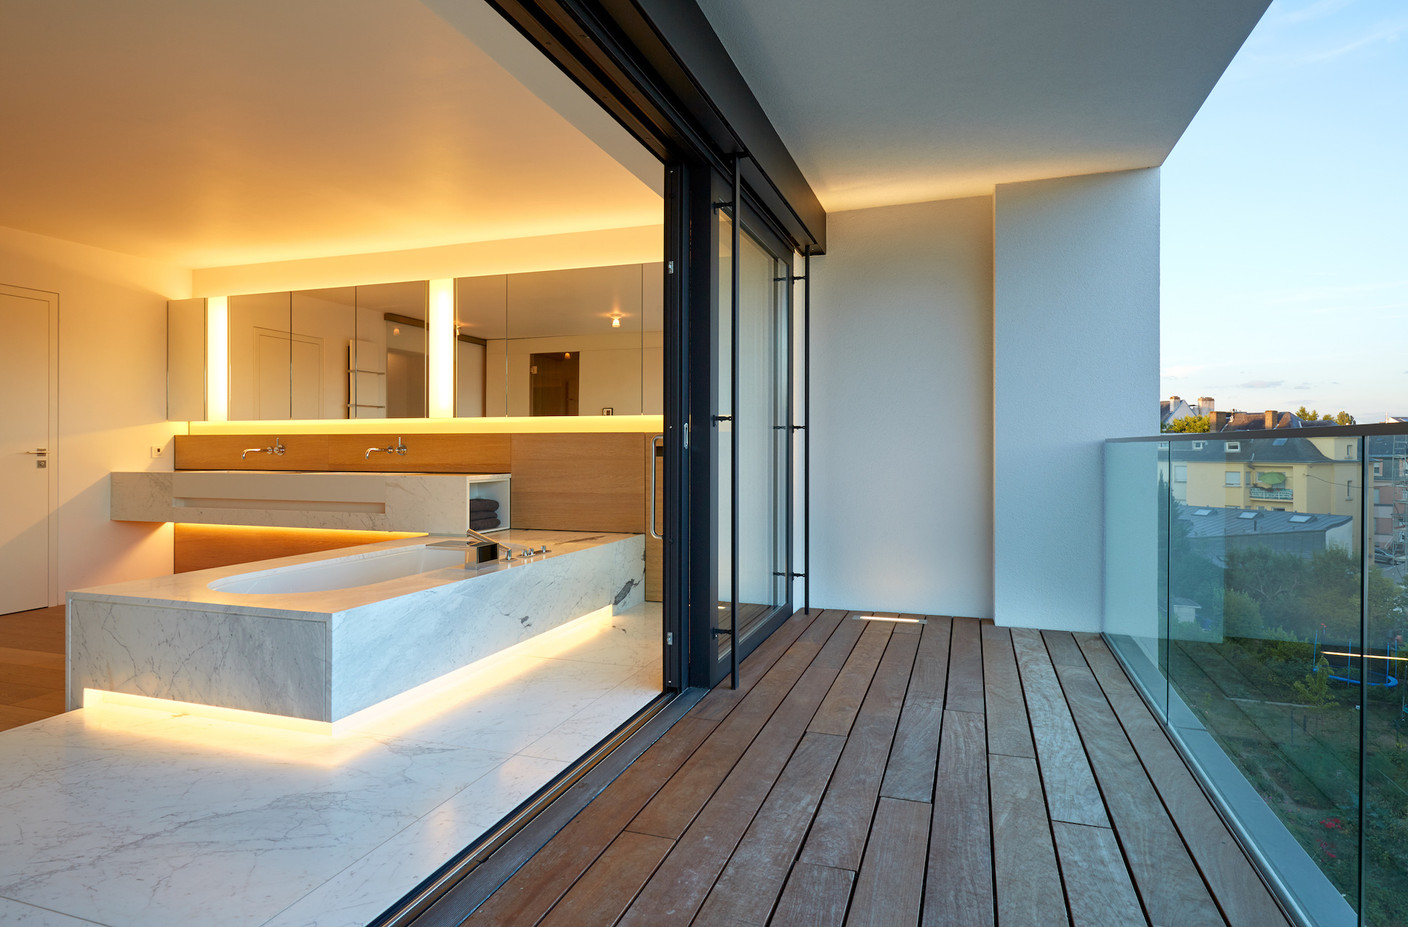 Dans cette salle de bains dessinée par NJOY, on trouve à la fois un éclairage soutenu au niveau du miroir, un éclairage indirect plus doux pour l’ambiance, et un spot intégré dans le sol de la terrasse pour prolonger la perception de l’espace. (Photo: Christof Weber)